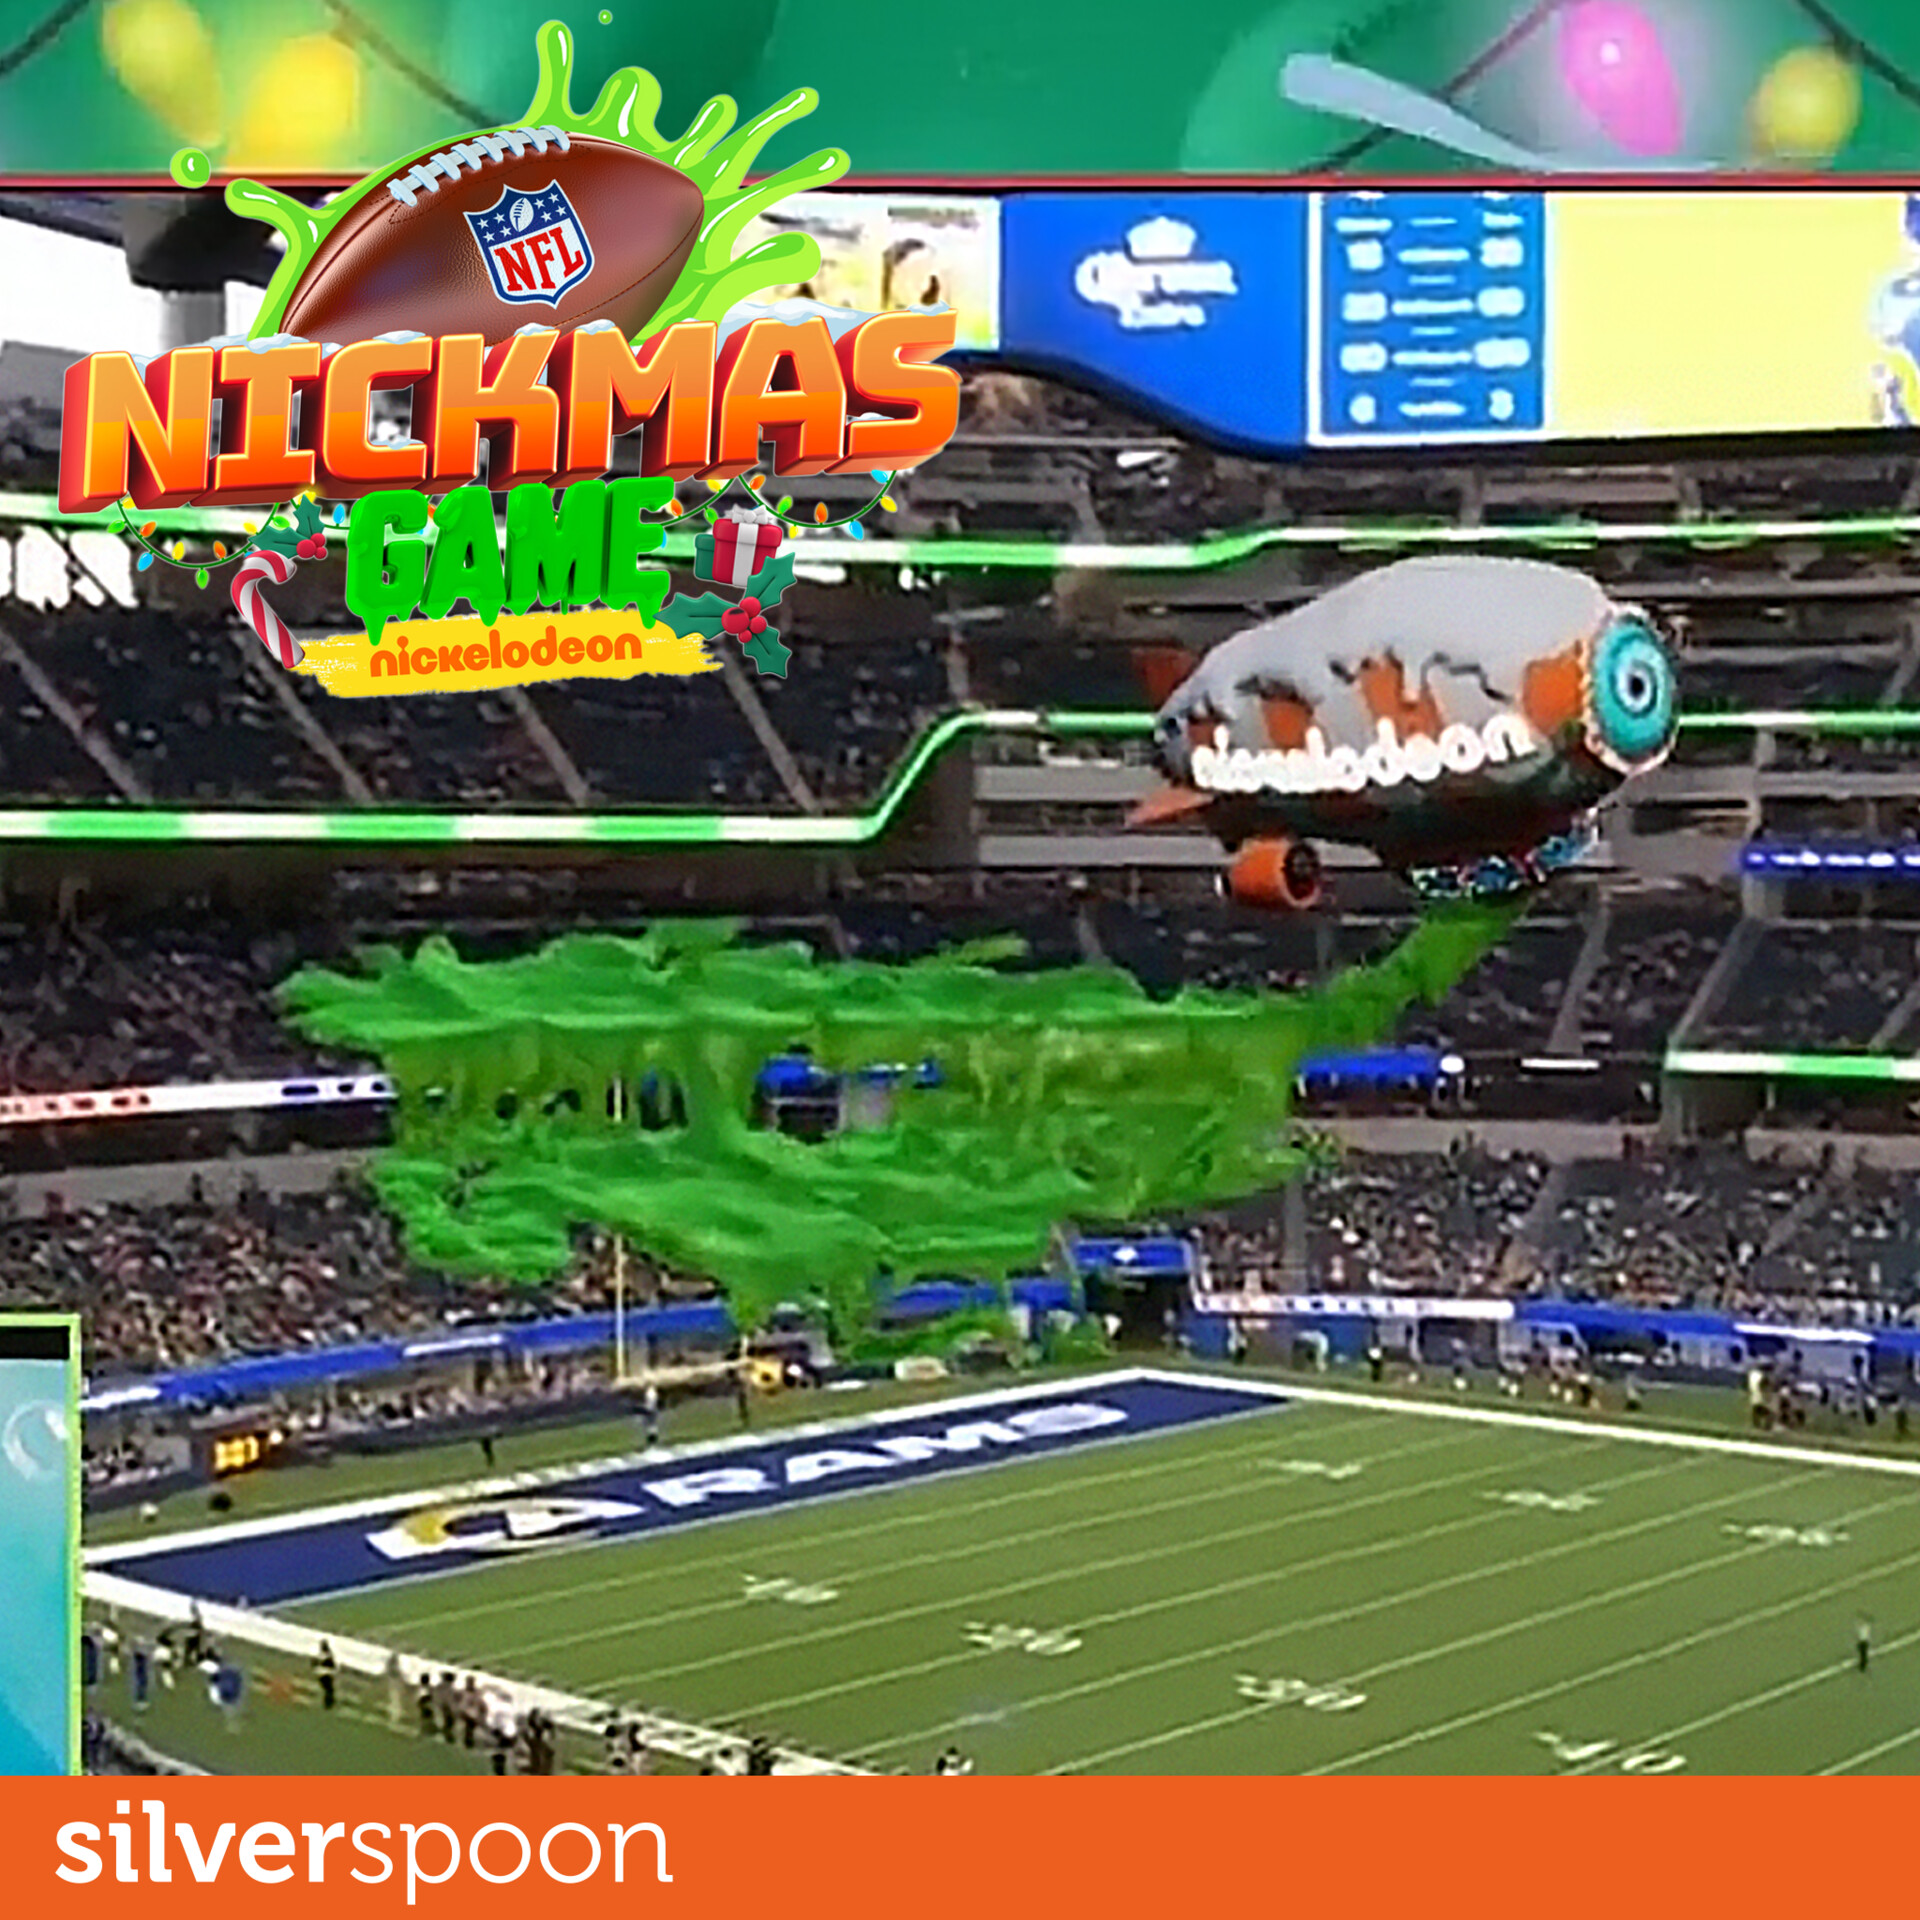 ArtStation - Blimp Audience Slime - NFL Nickmas Game